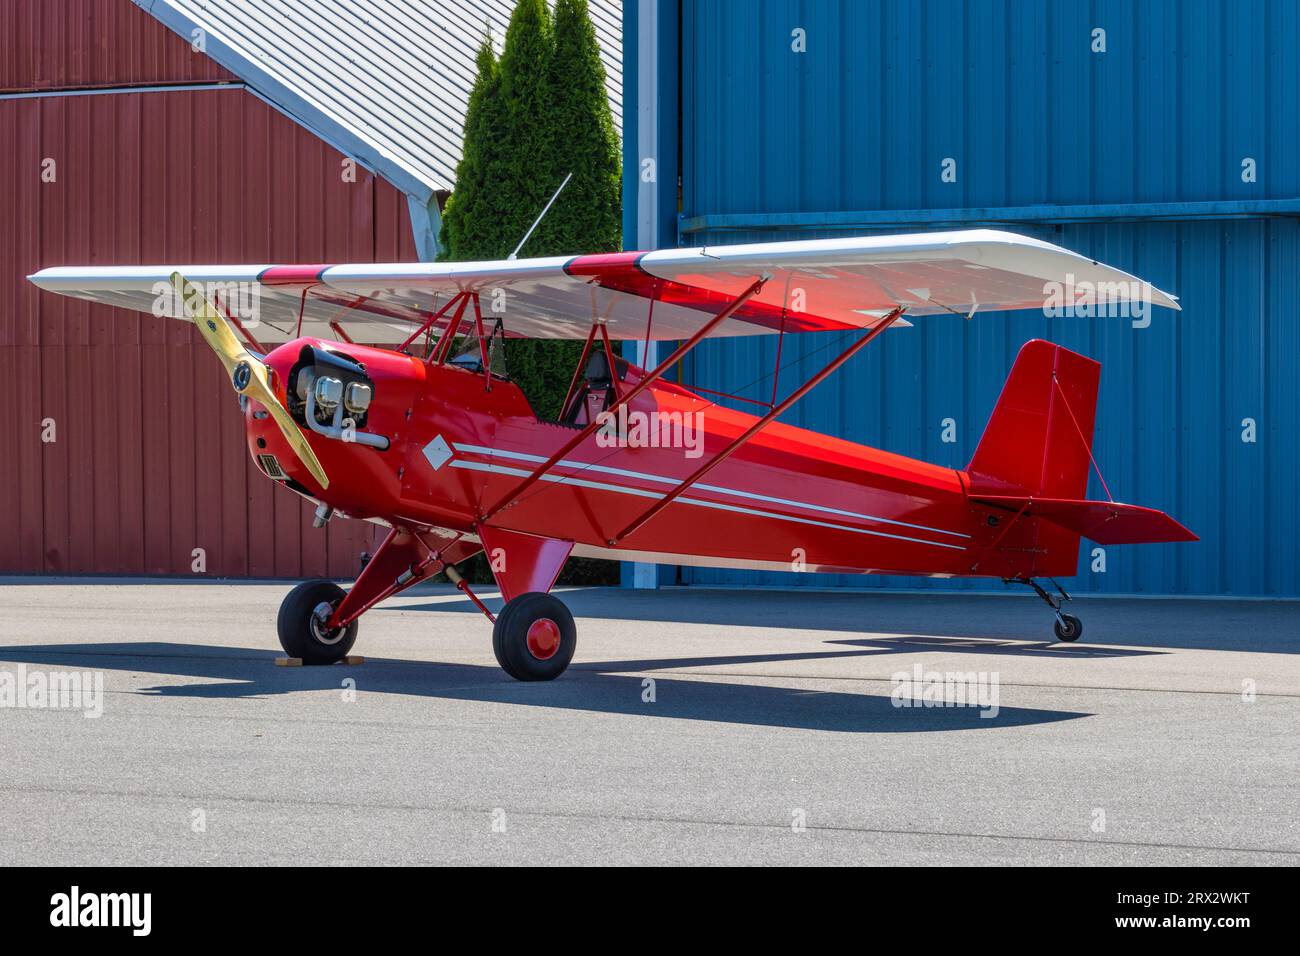 Ein kleines Flugzeug mit festen Flügeln steht vor zwei Hängern an einem Flughafen. Stockfoto